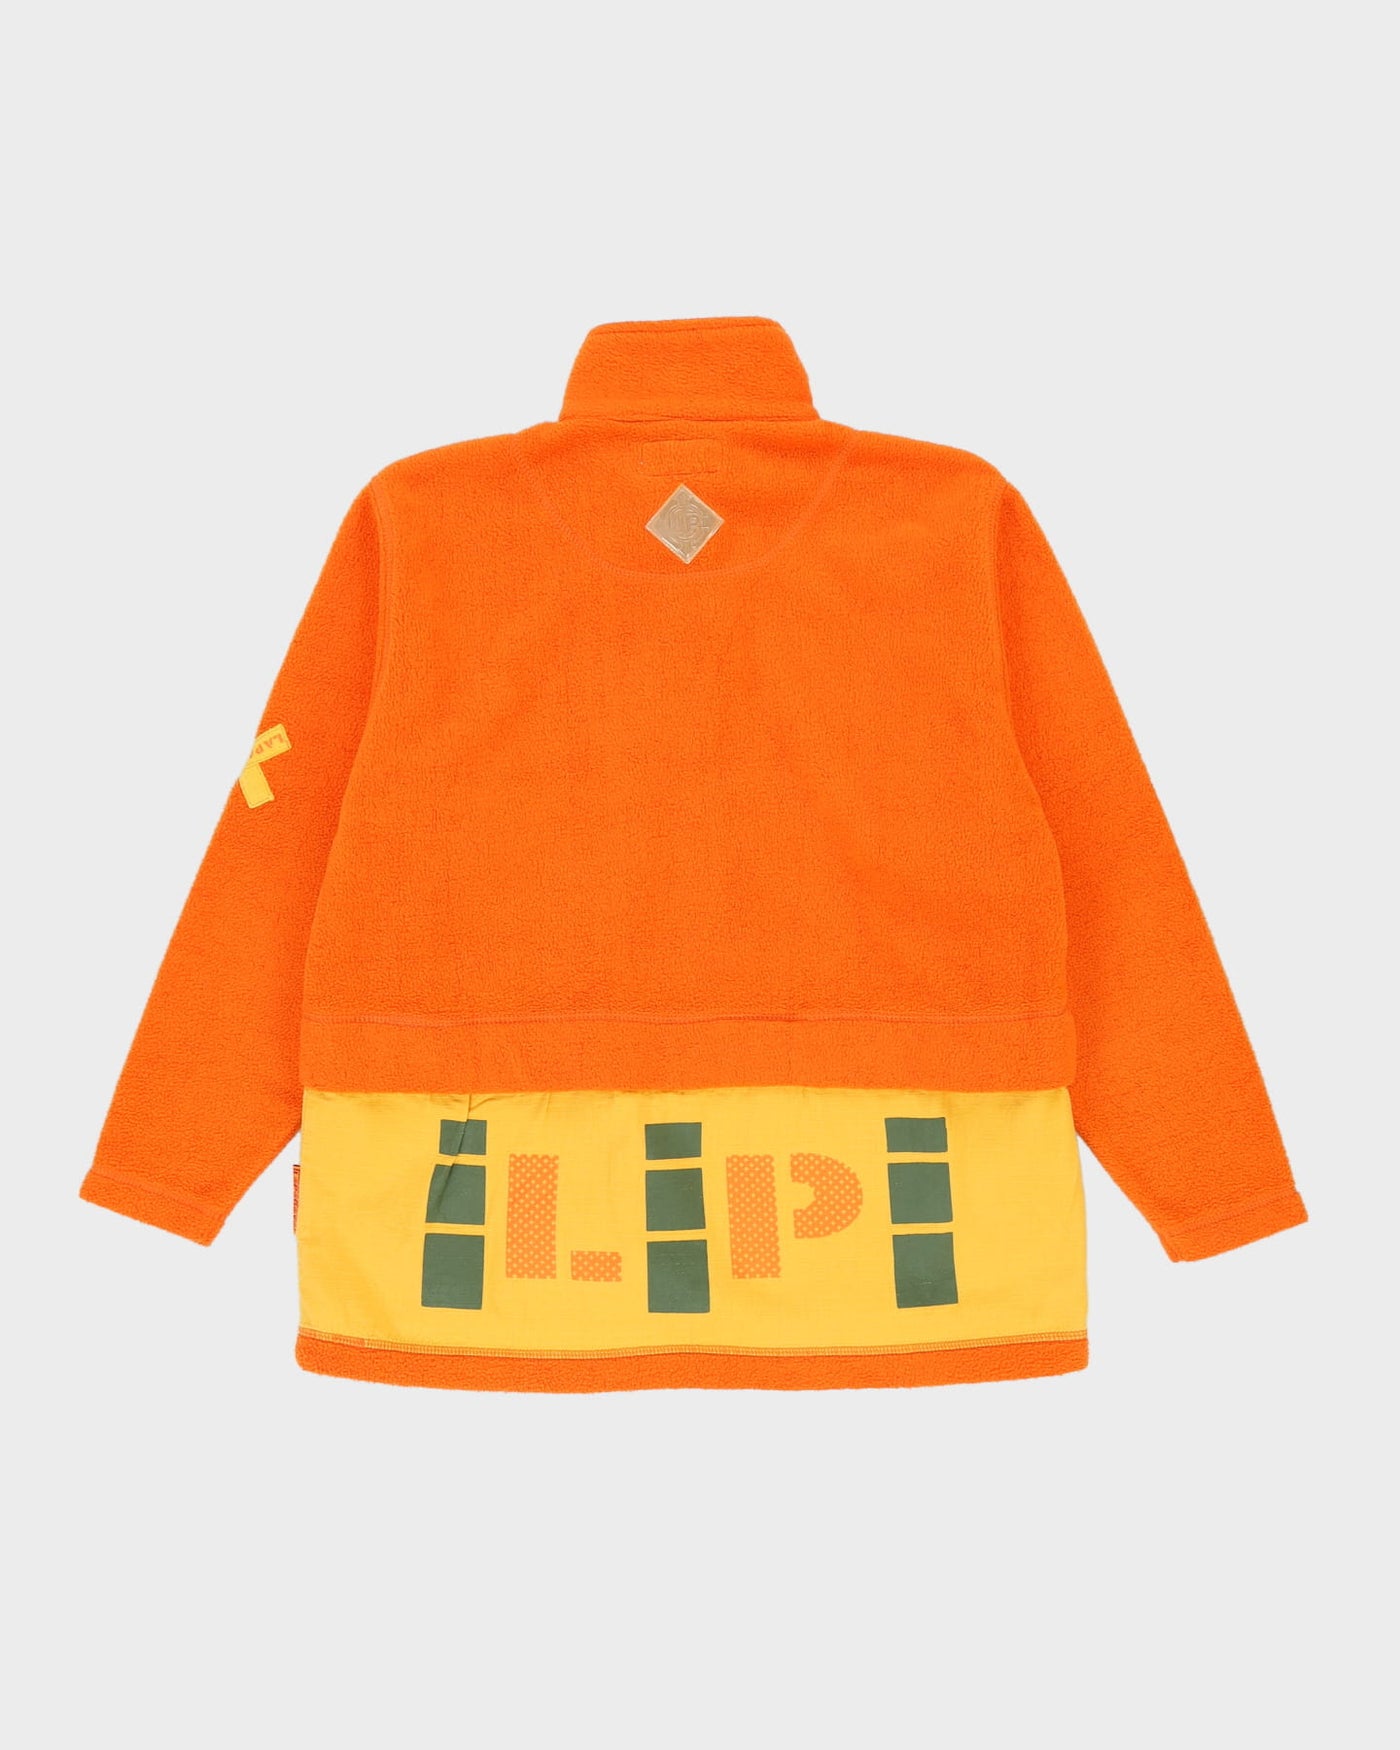 Vintage 90s Orange Fleece - M